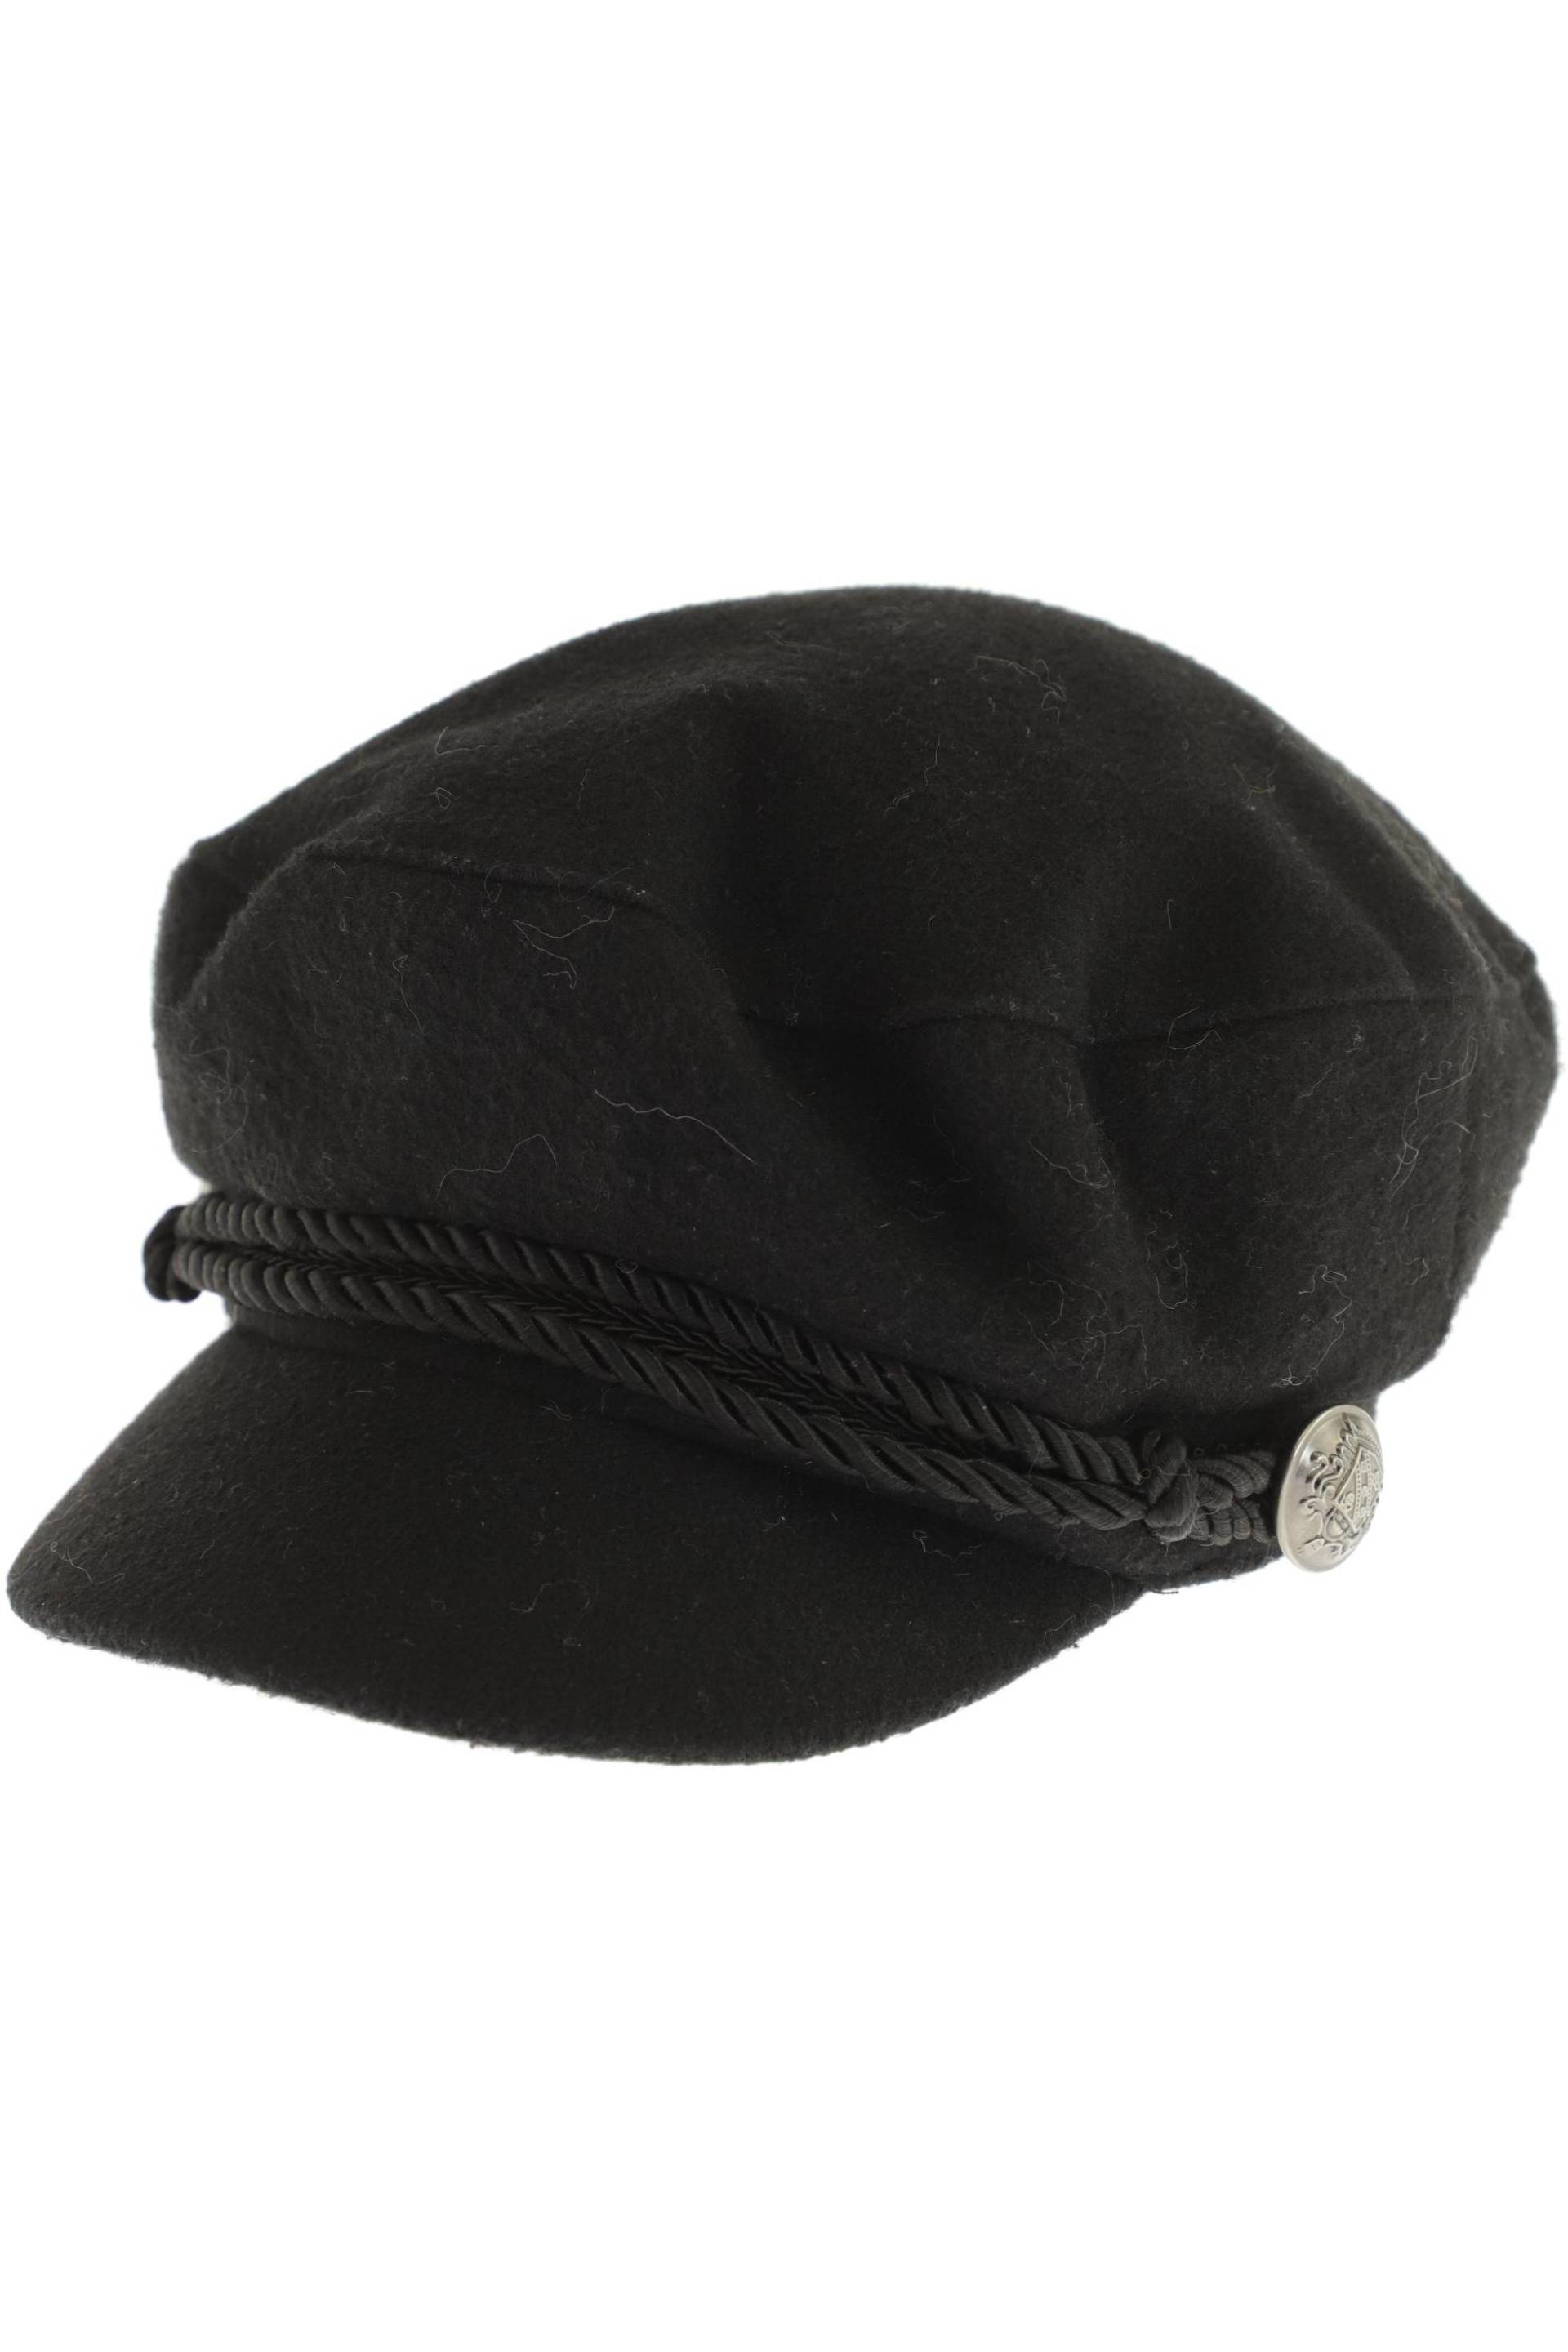 Hallhuber Damen Hut/Mütze, schwarz von Hallhuber